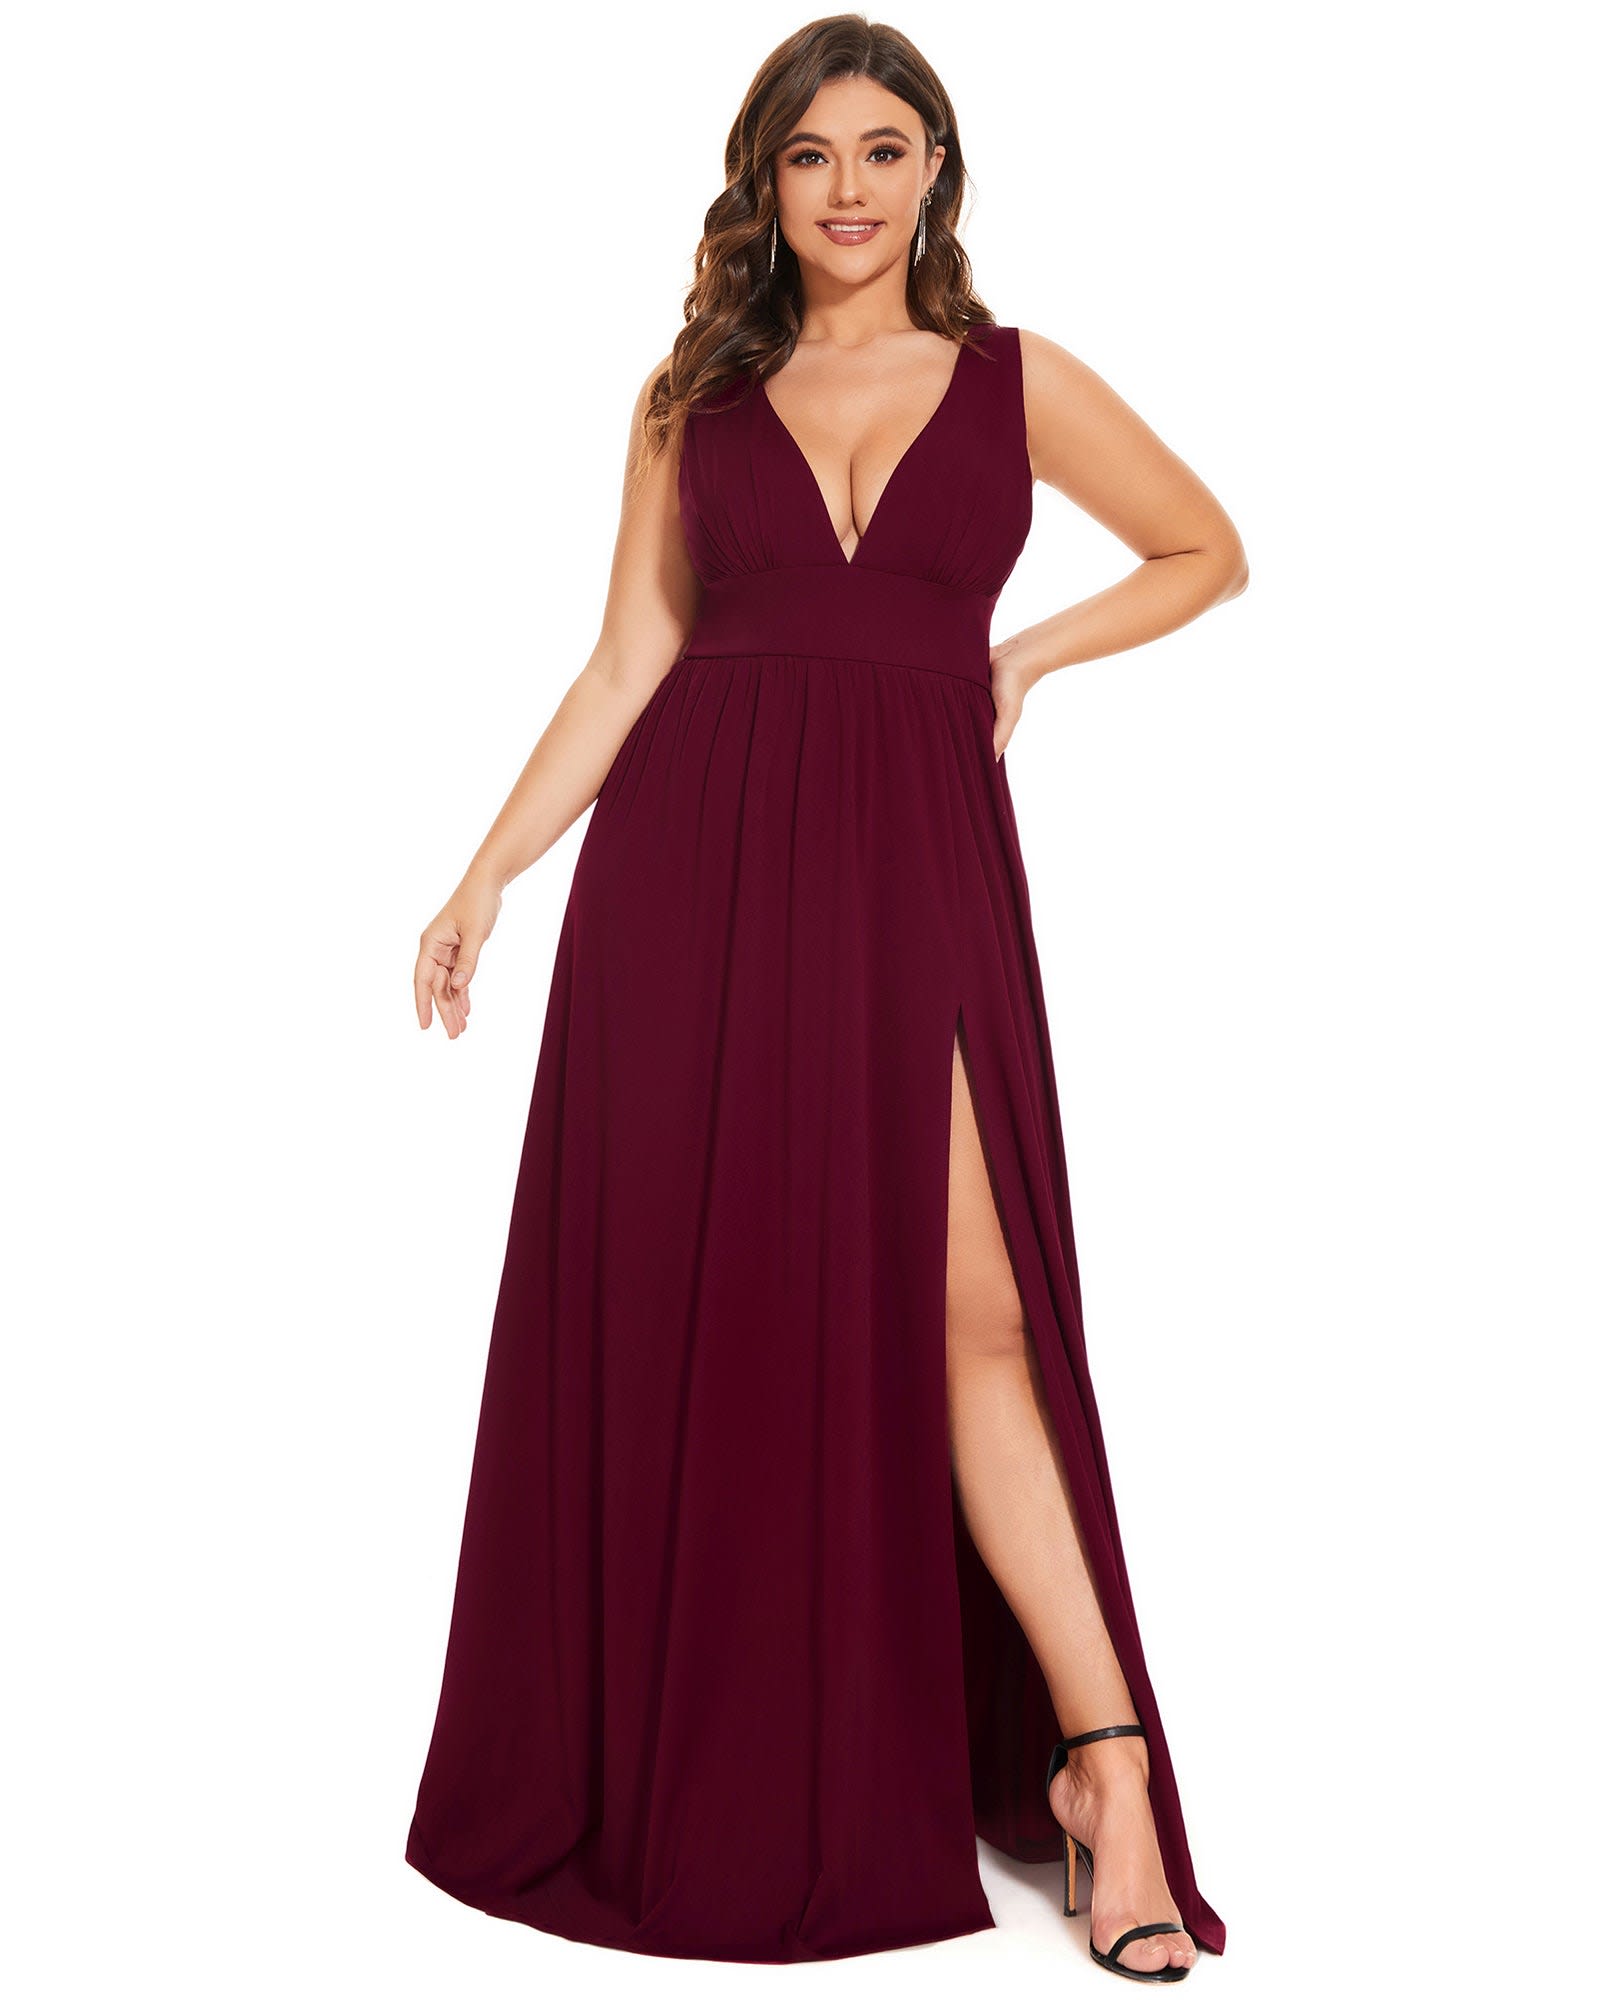 Sleeveless V-Neck Empire Waist High Slit Floor-Length Evening Dress | Burgundy